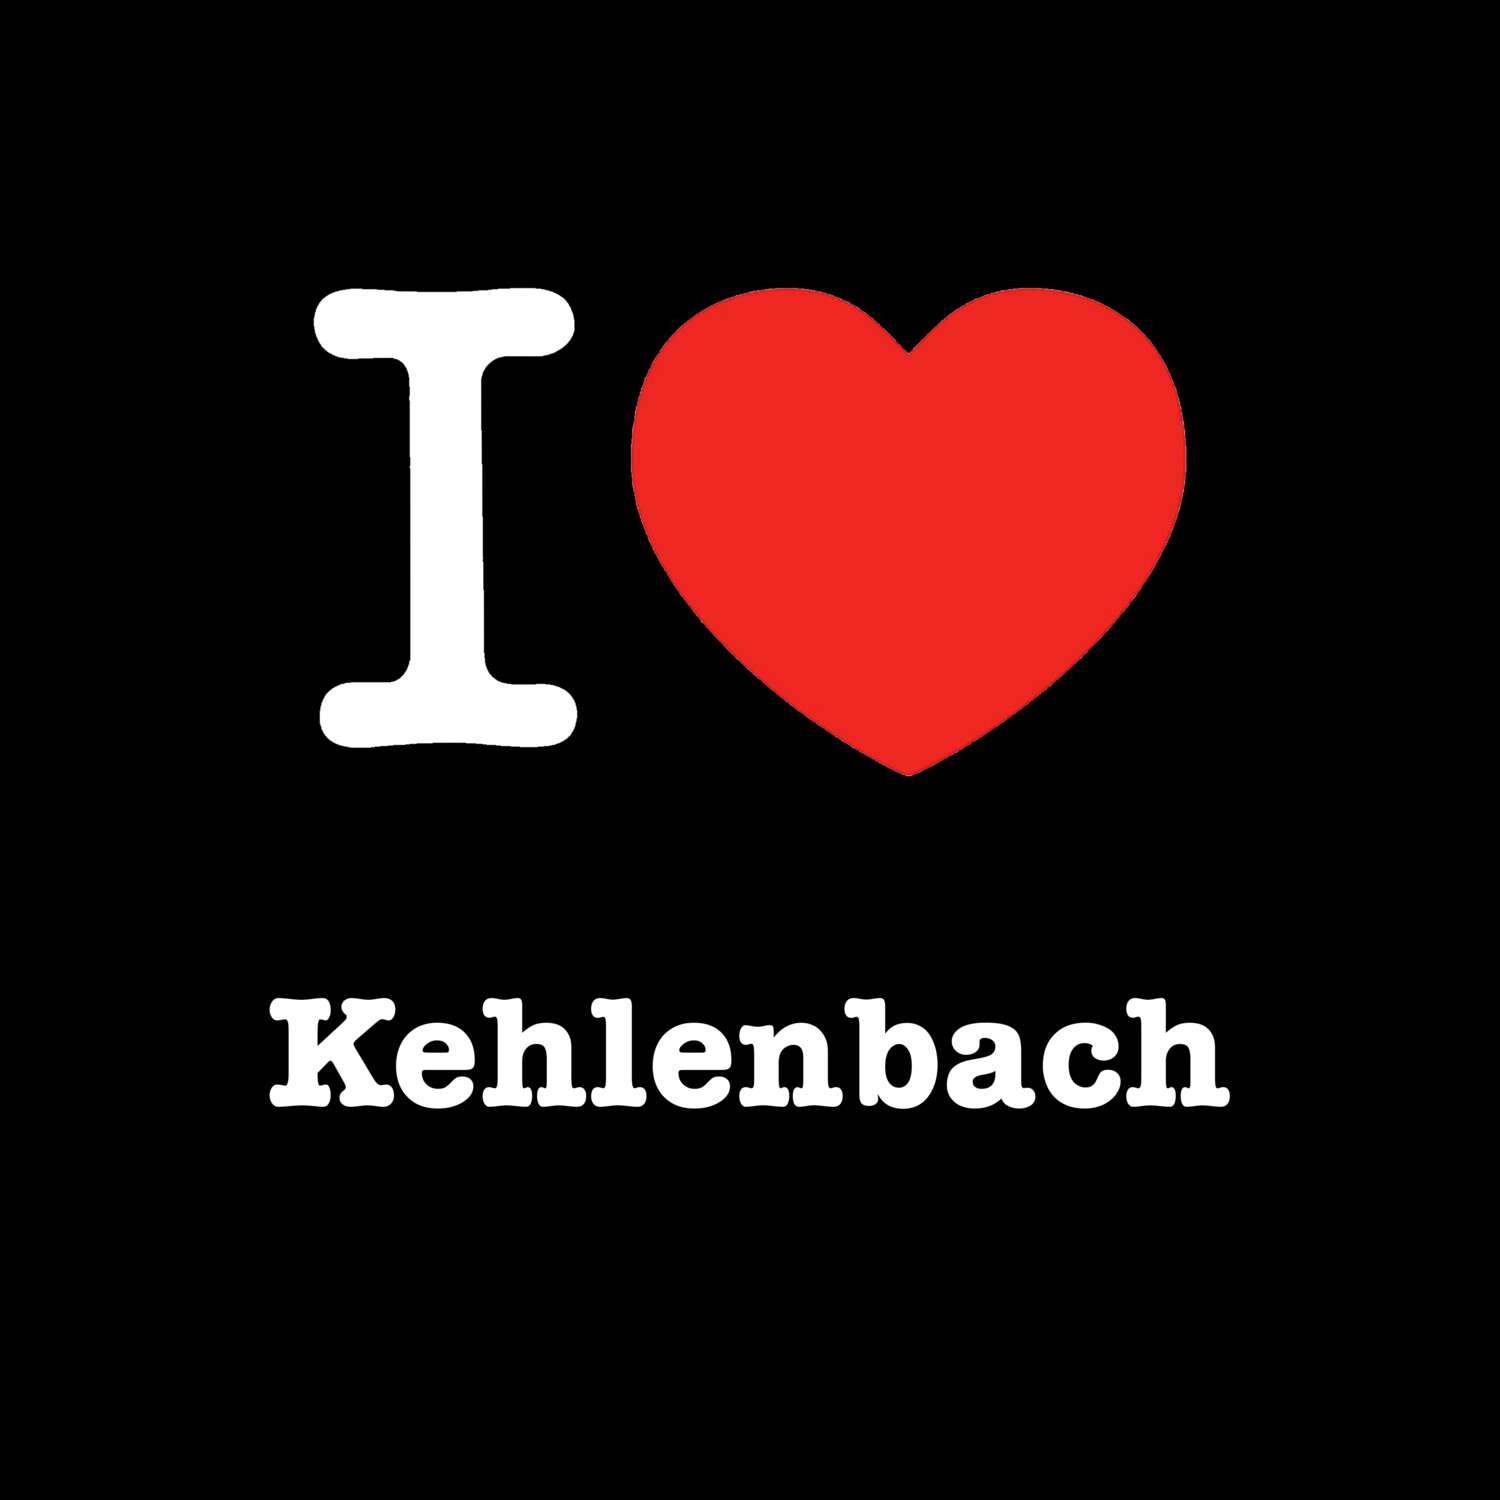 Kehlenbach T-Shirt »I love«